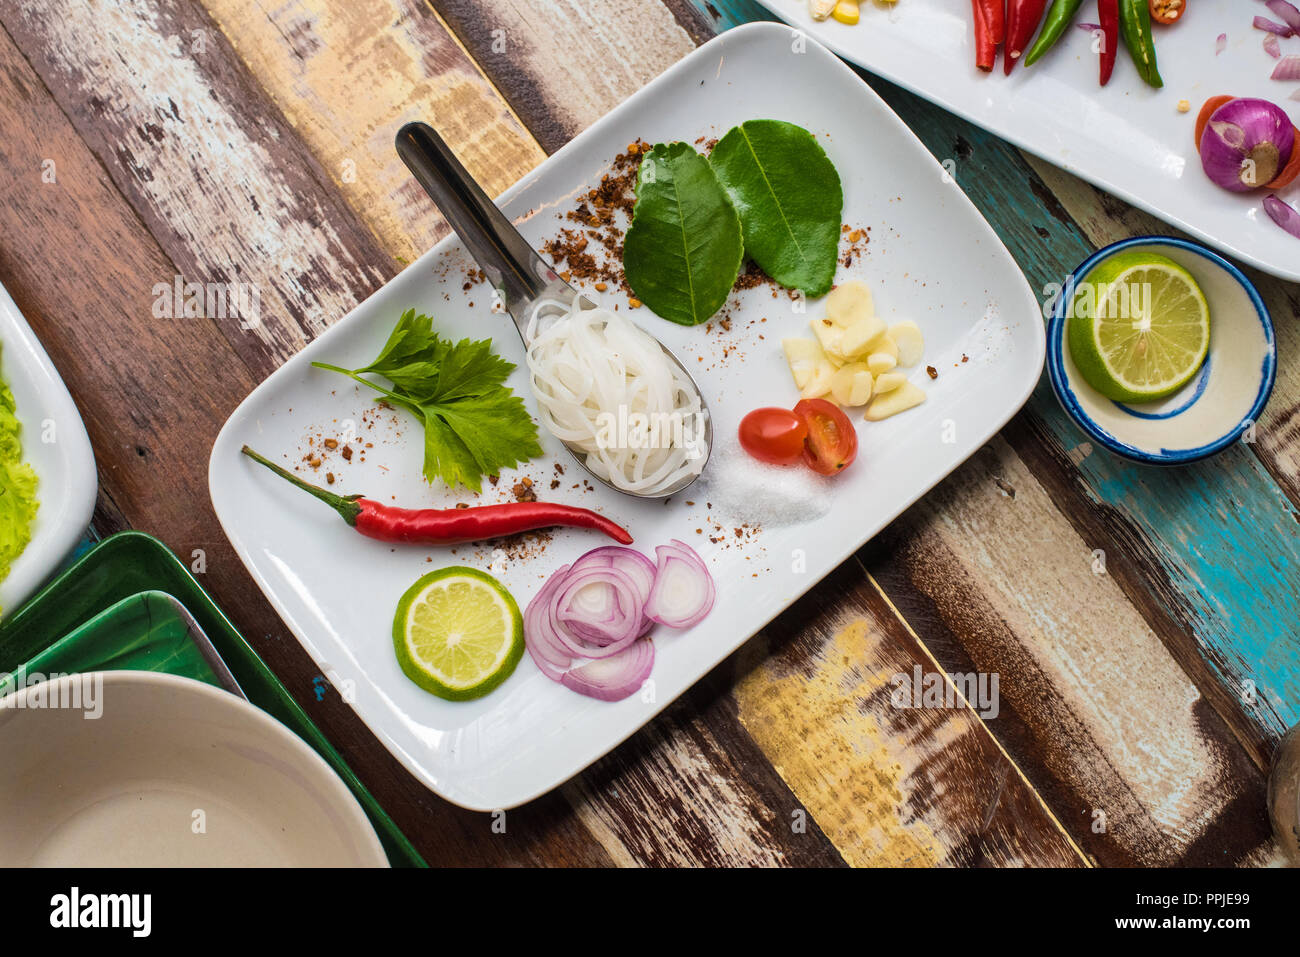 Fotografia di cibo disposizione piatta di piatti vari e spezie Foto Stock